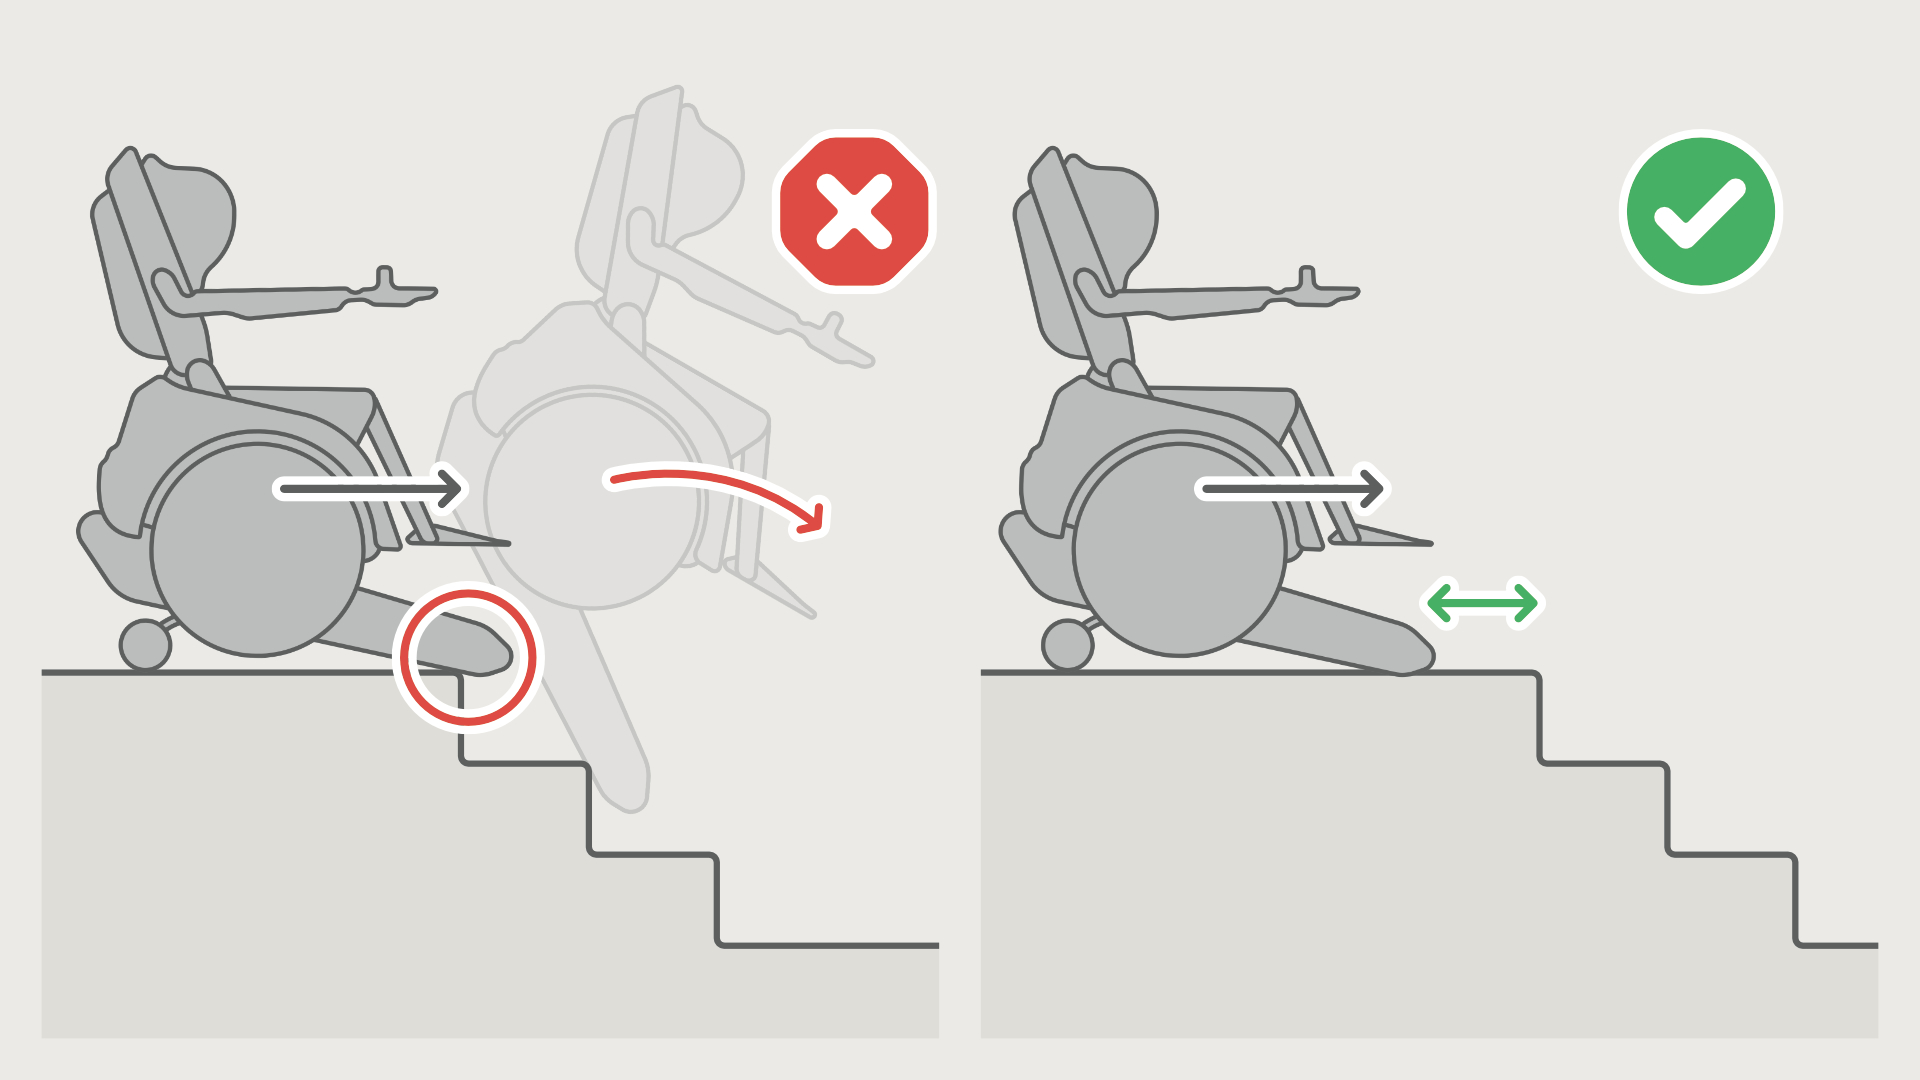 N'activez le mode escalier que si les pointes des chenilles se trouvent devant le bord supérieur de l'escalier.